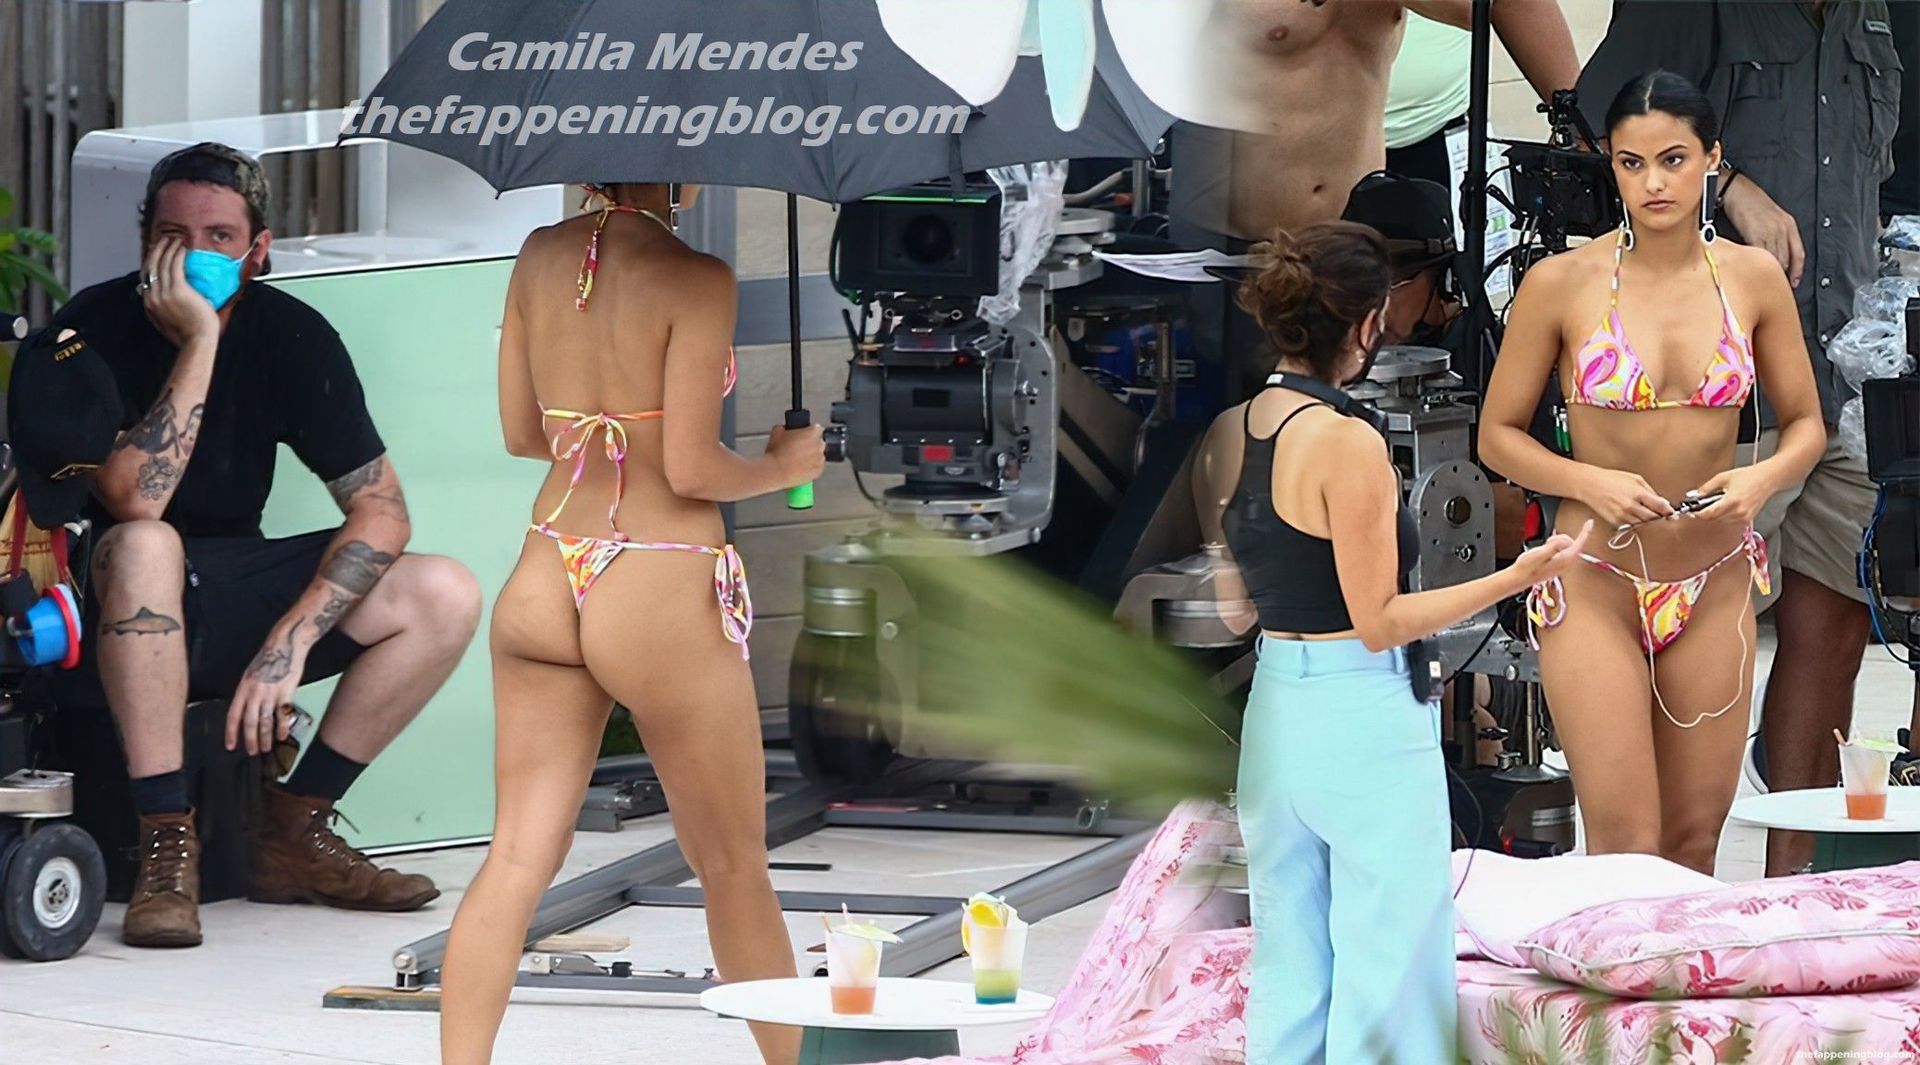 Camila mendes nude photos